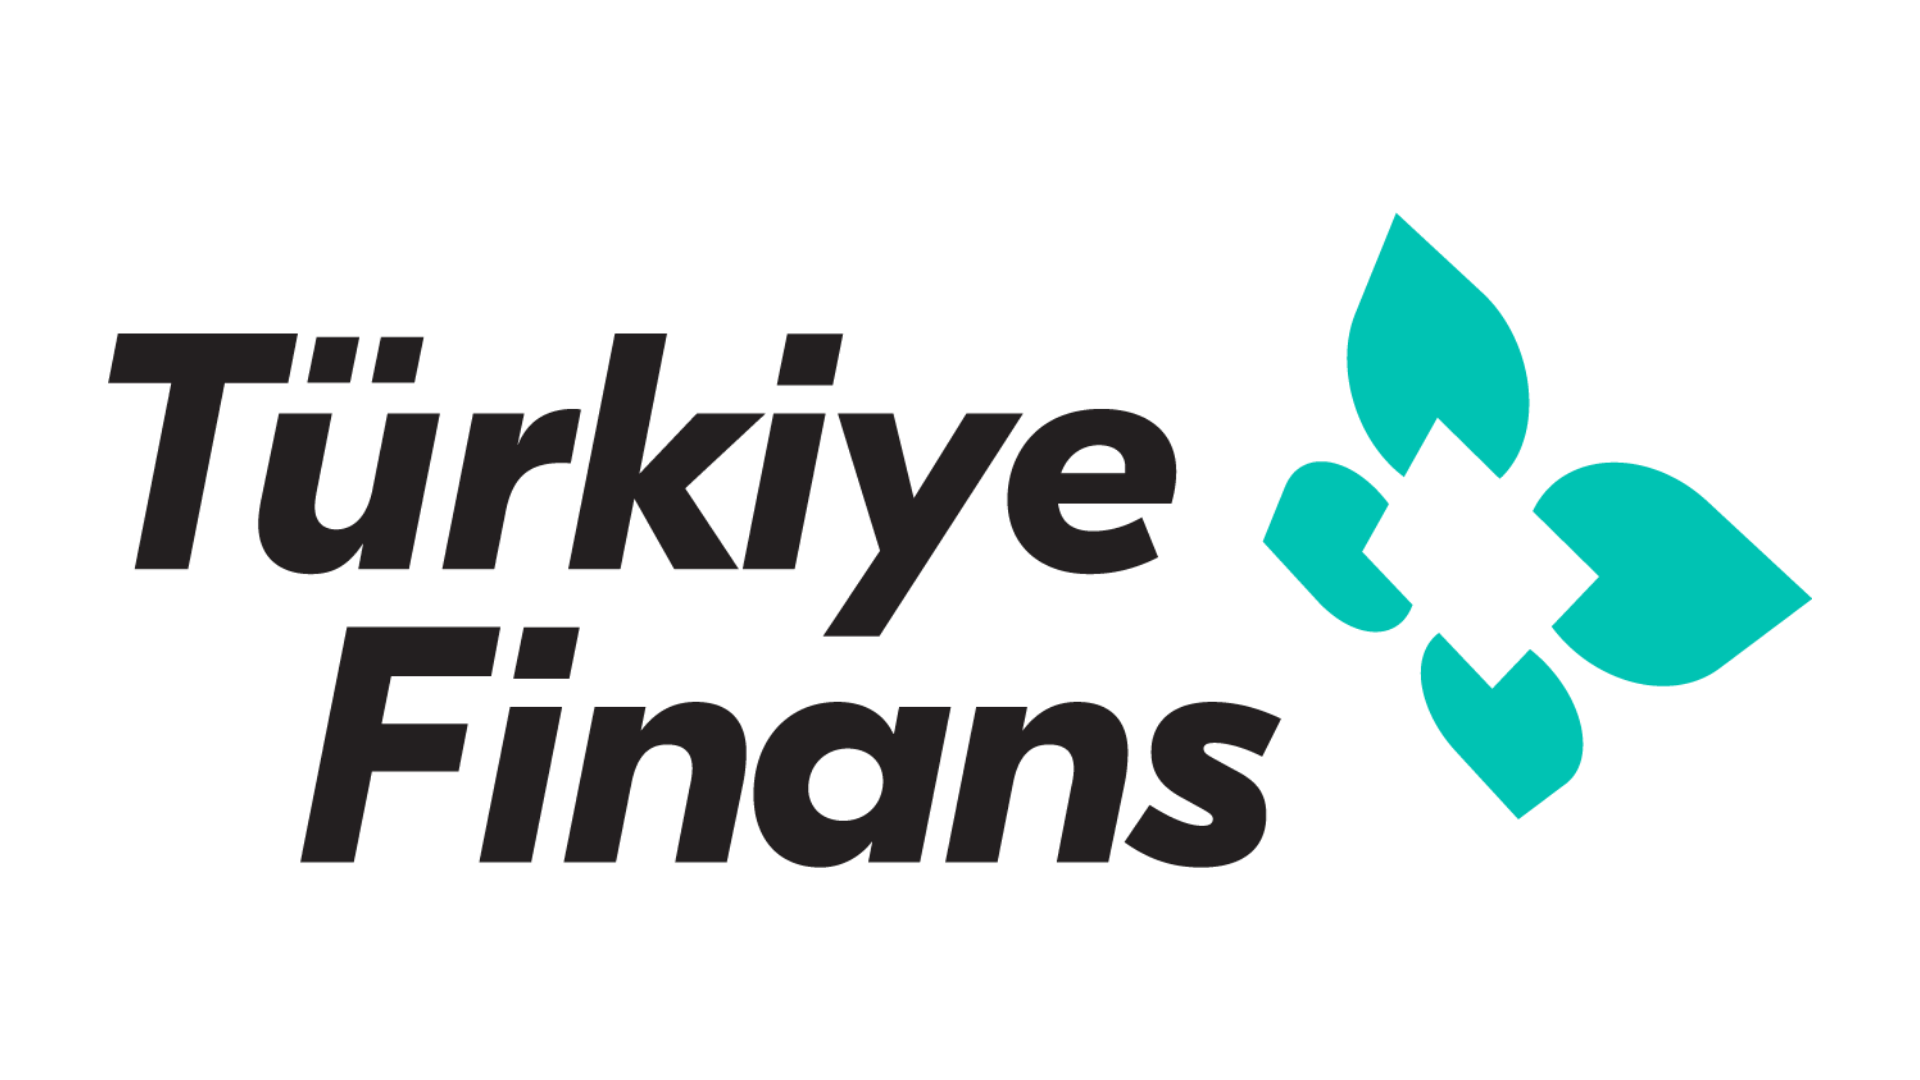 Türkiye Finans